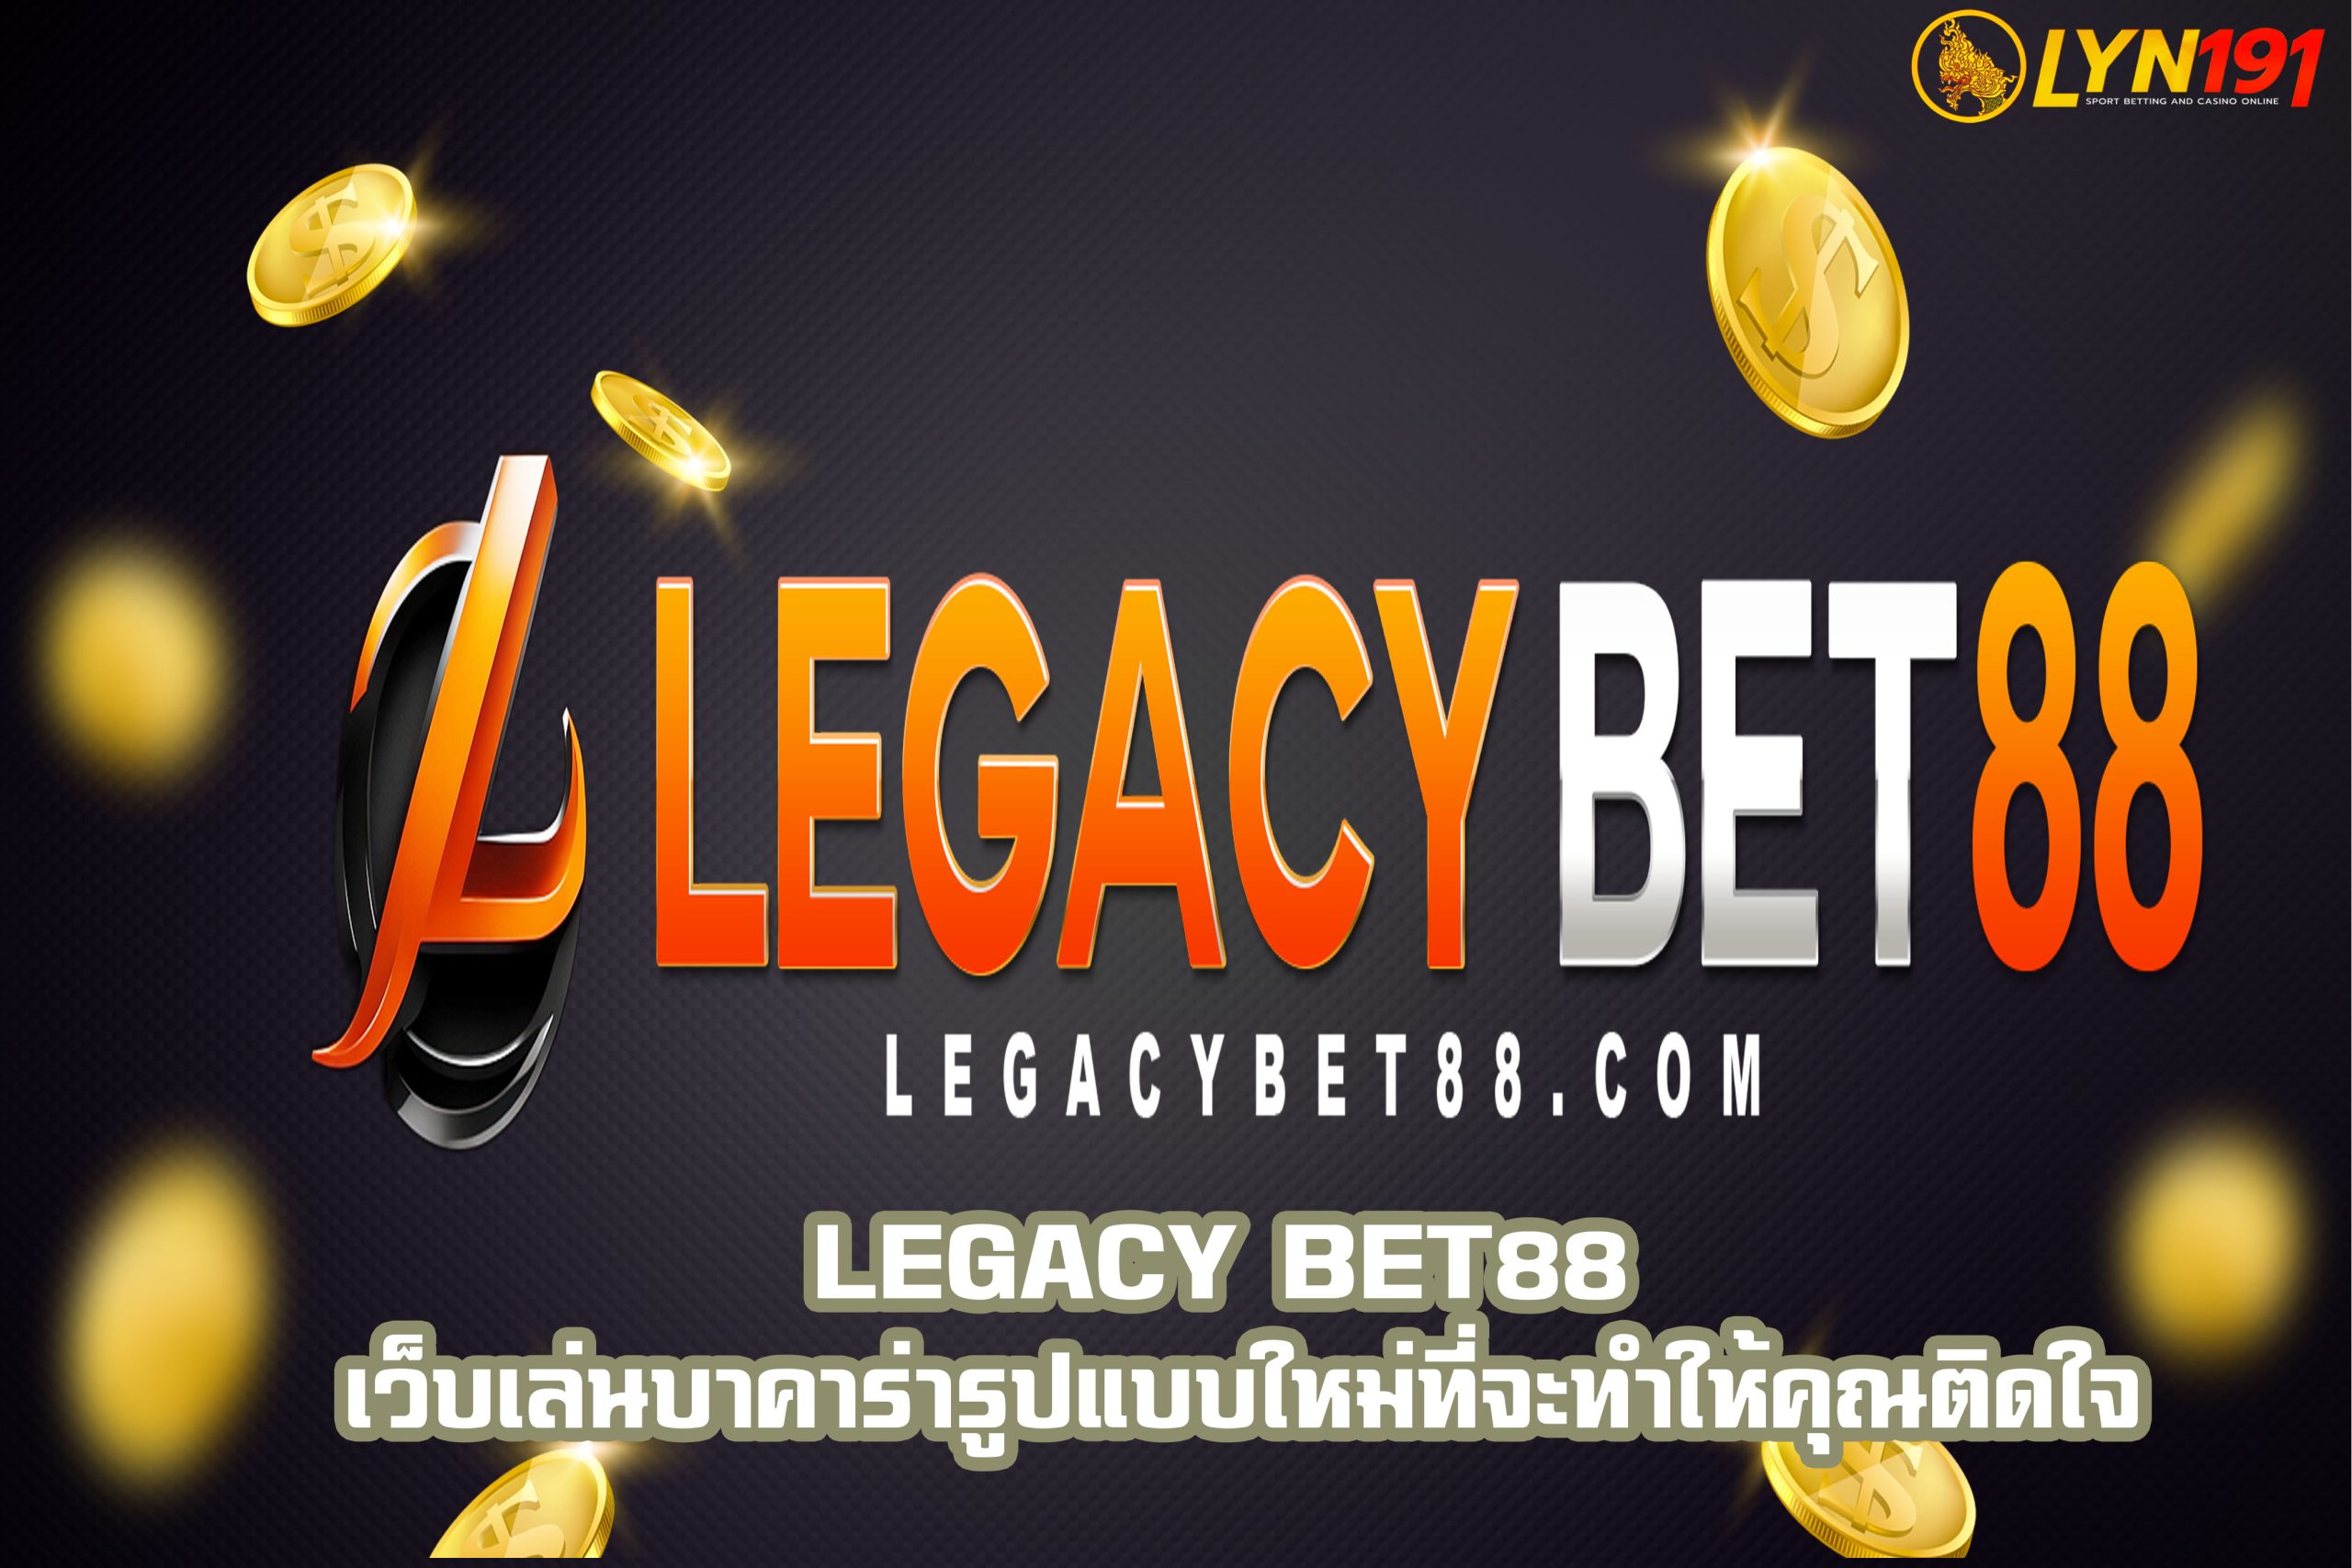 legacy bet88 เว็บเล่นบาคาร่ารูปแบบใหม่ที่จะทำให้คุณติดใจ